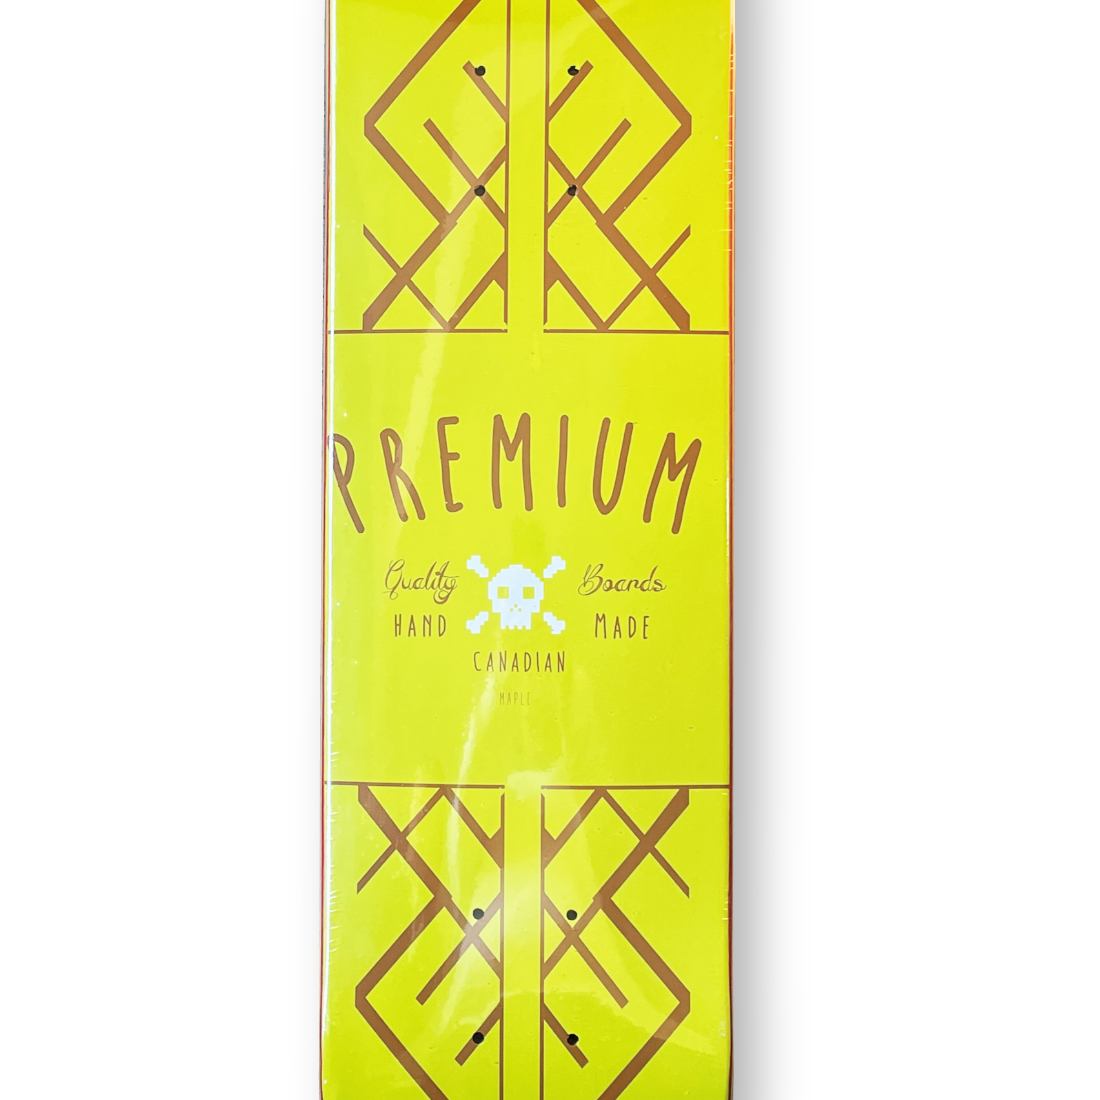 (子供用)【7.25】Premium Skateboards - Retro "Yellow"